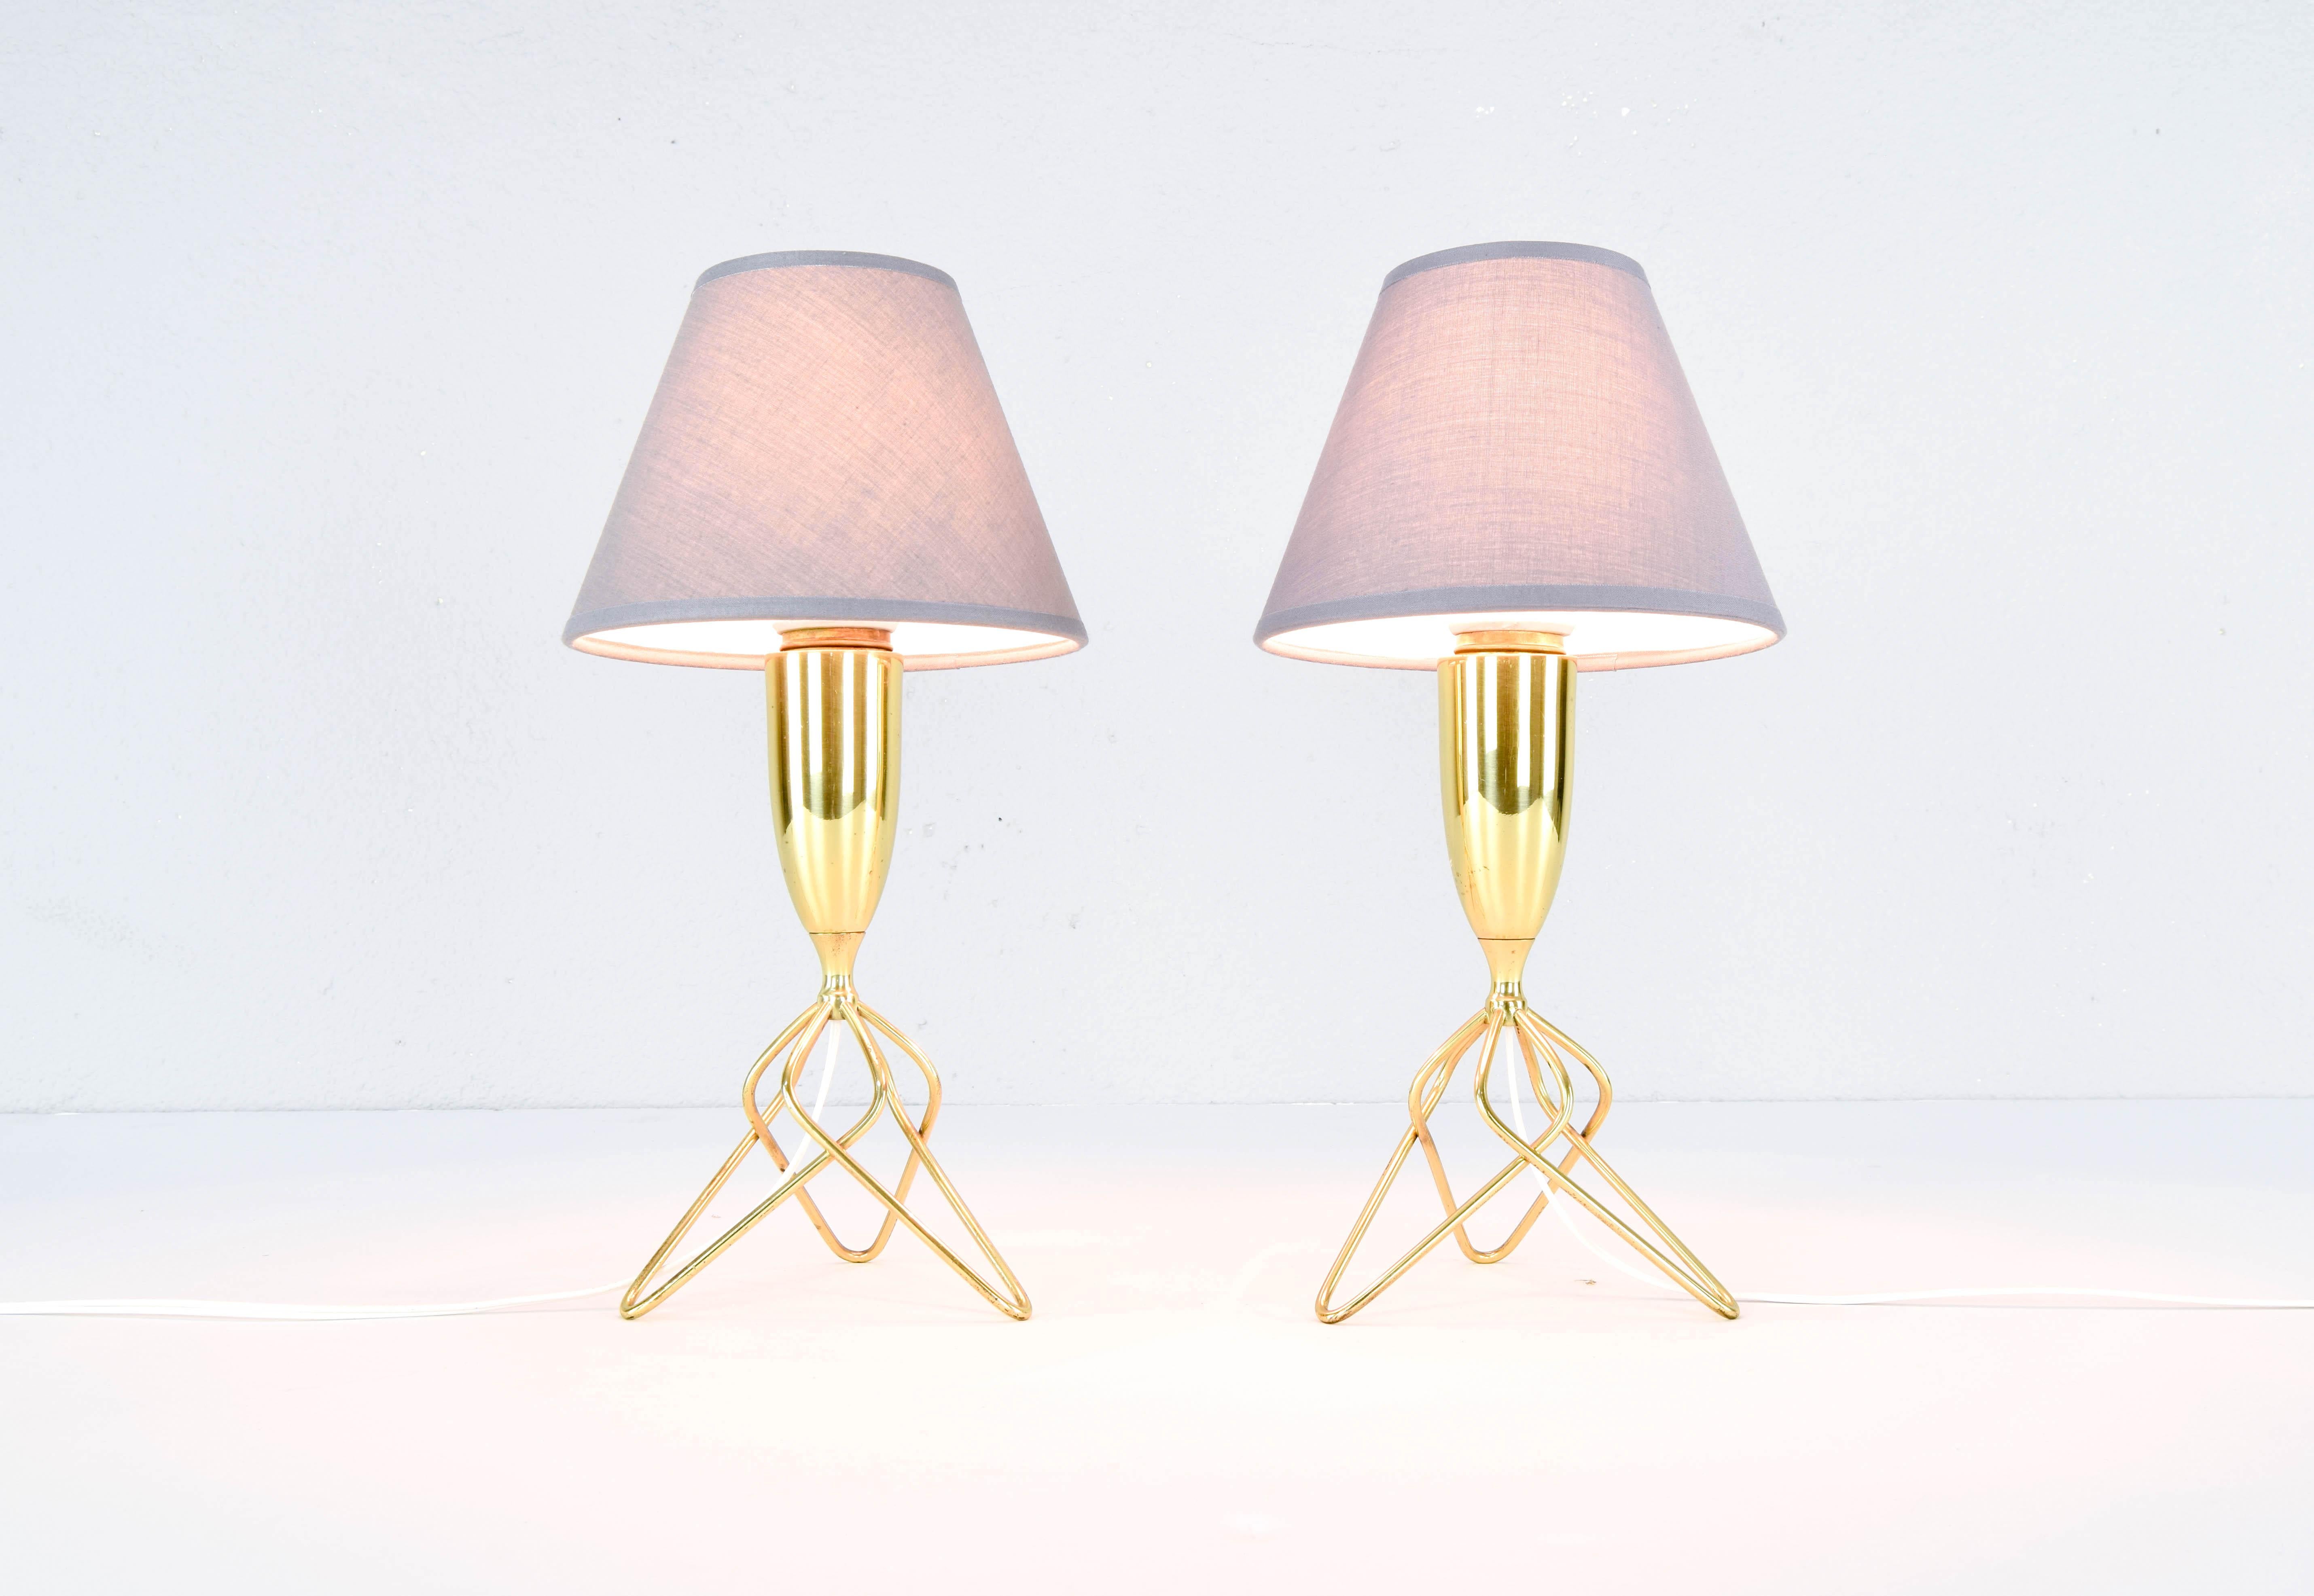 Paire de lampes de table tripodes danoises de style moderne du milieu du siècle, avec tiges en laiton, des années 1960.
Magnifique design nordique avec trois pieds en tiges dorées imbriquées et un corps en laiton qui sont conservés en très bon